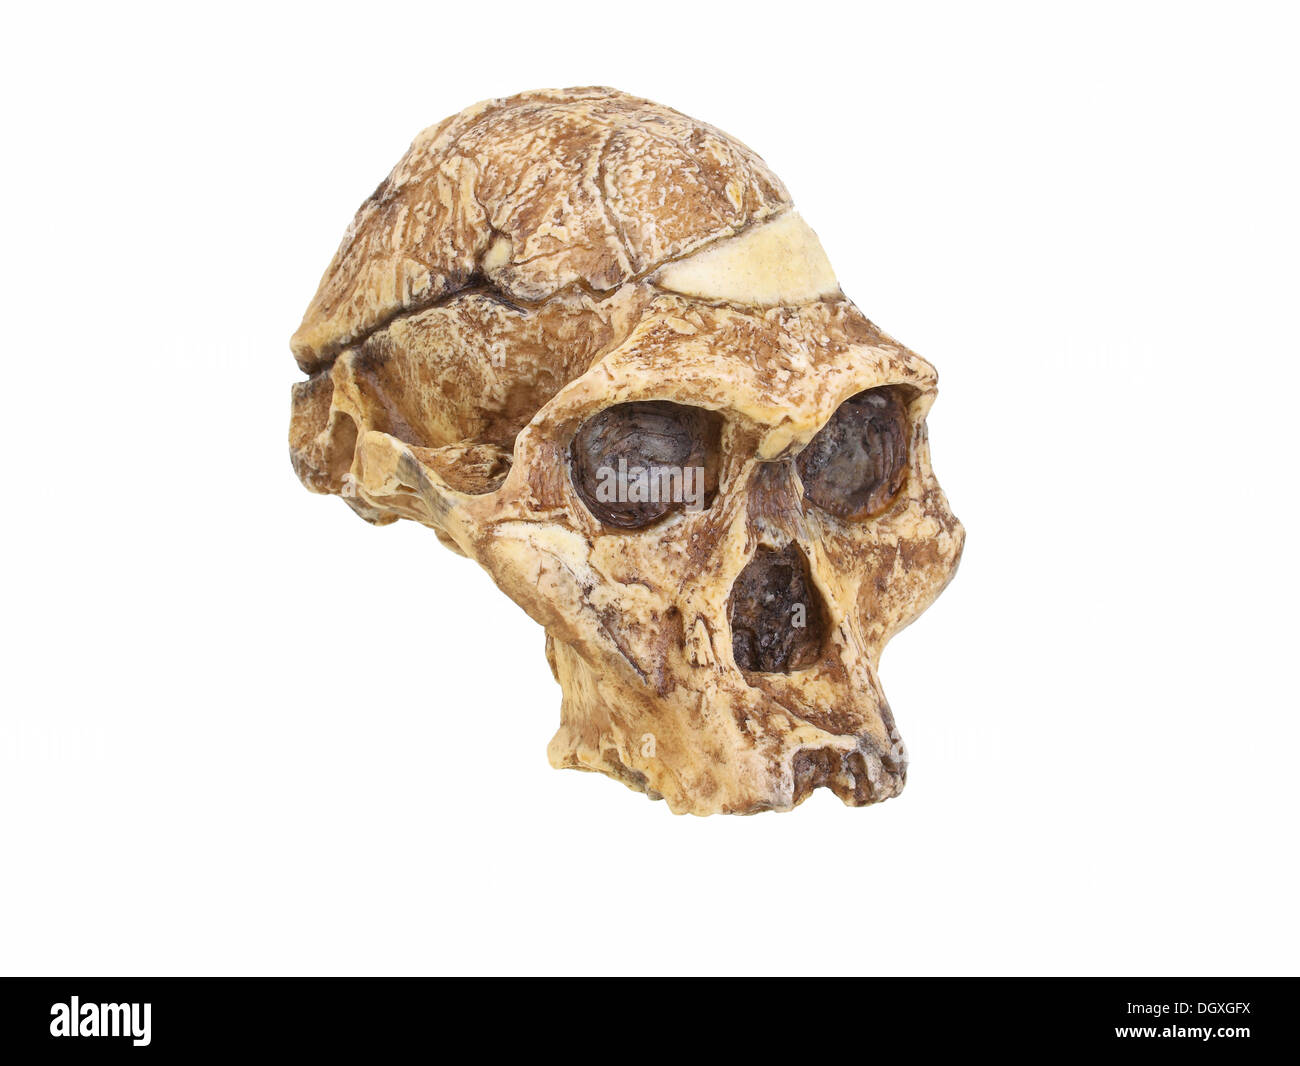 Replikat Schädel eines Australopithecus Africanus, Frau Ples, Evolution der menschlichen Spezies Stockfoto